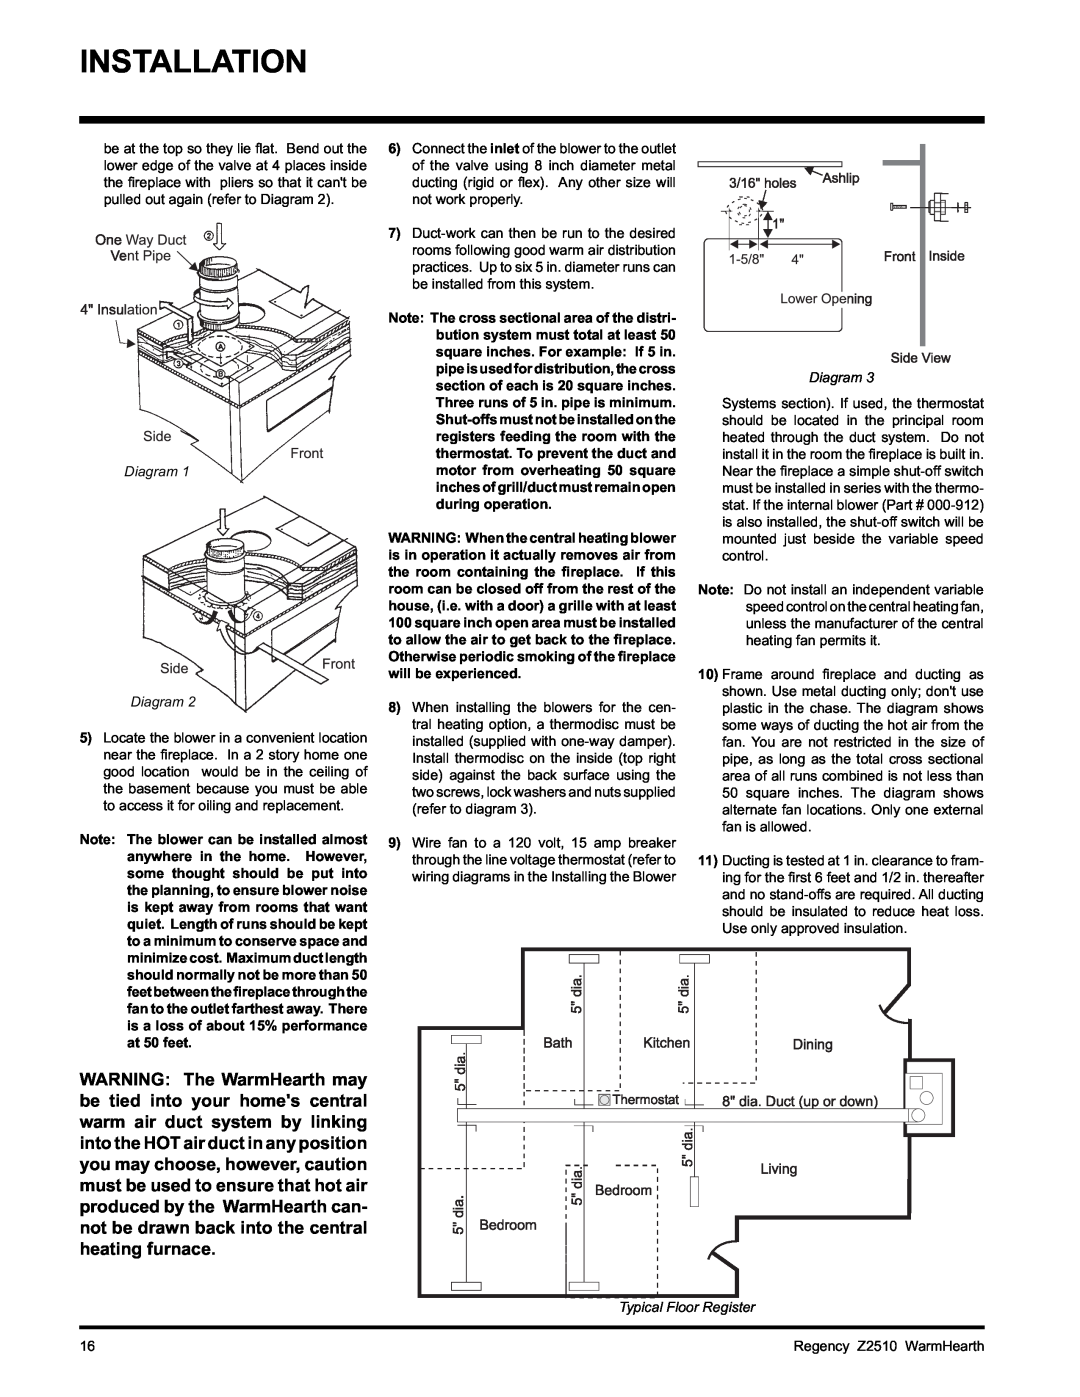 Regency Z2510L installation manual Installation, Diagram Diagram, Typical Floor Register, Regency Z2510 WarmHearth 